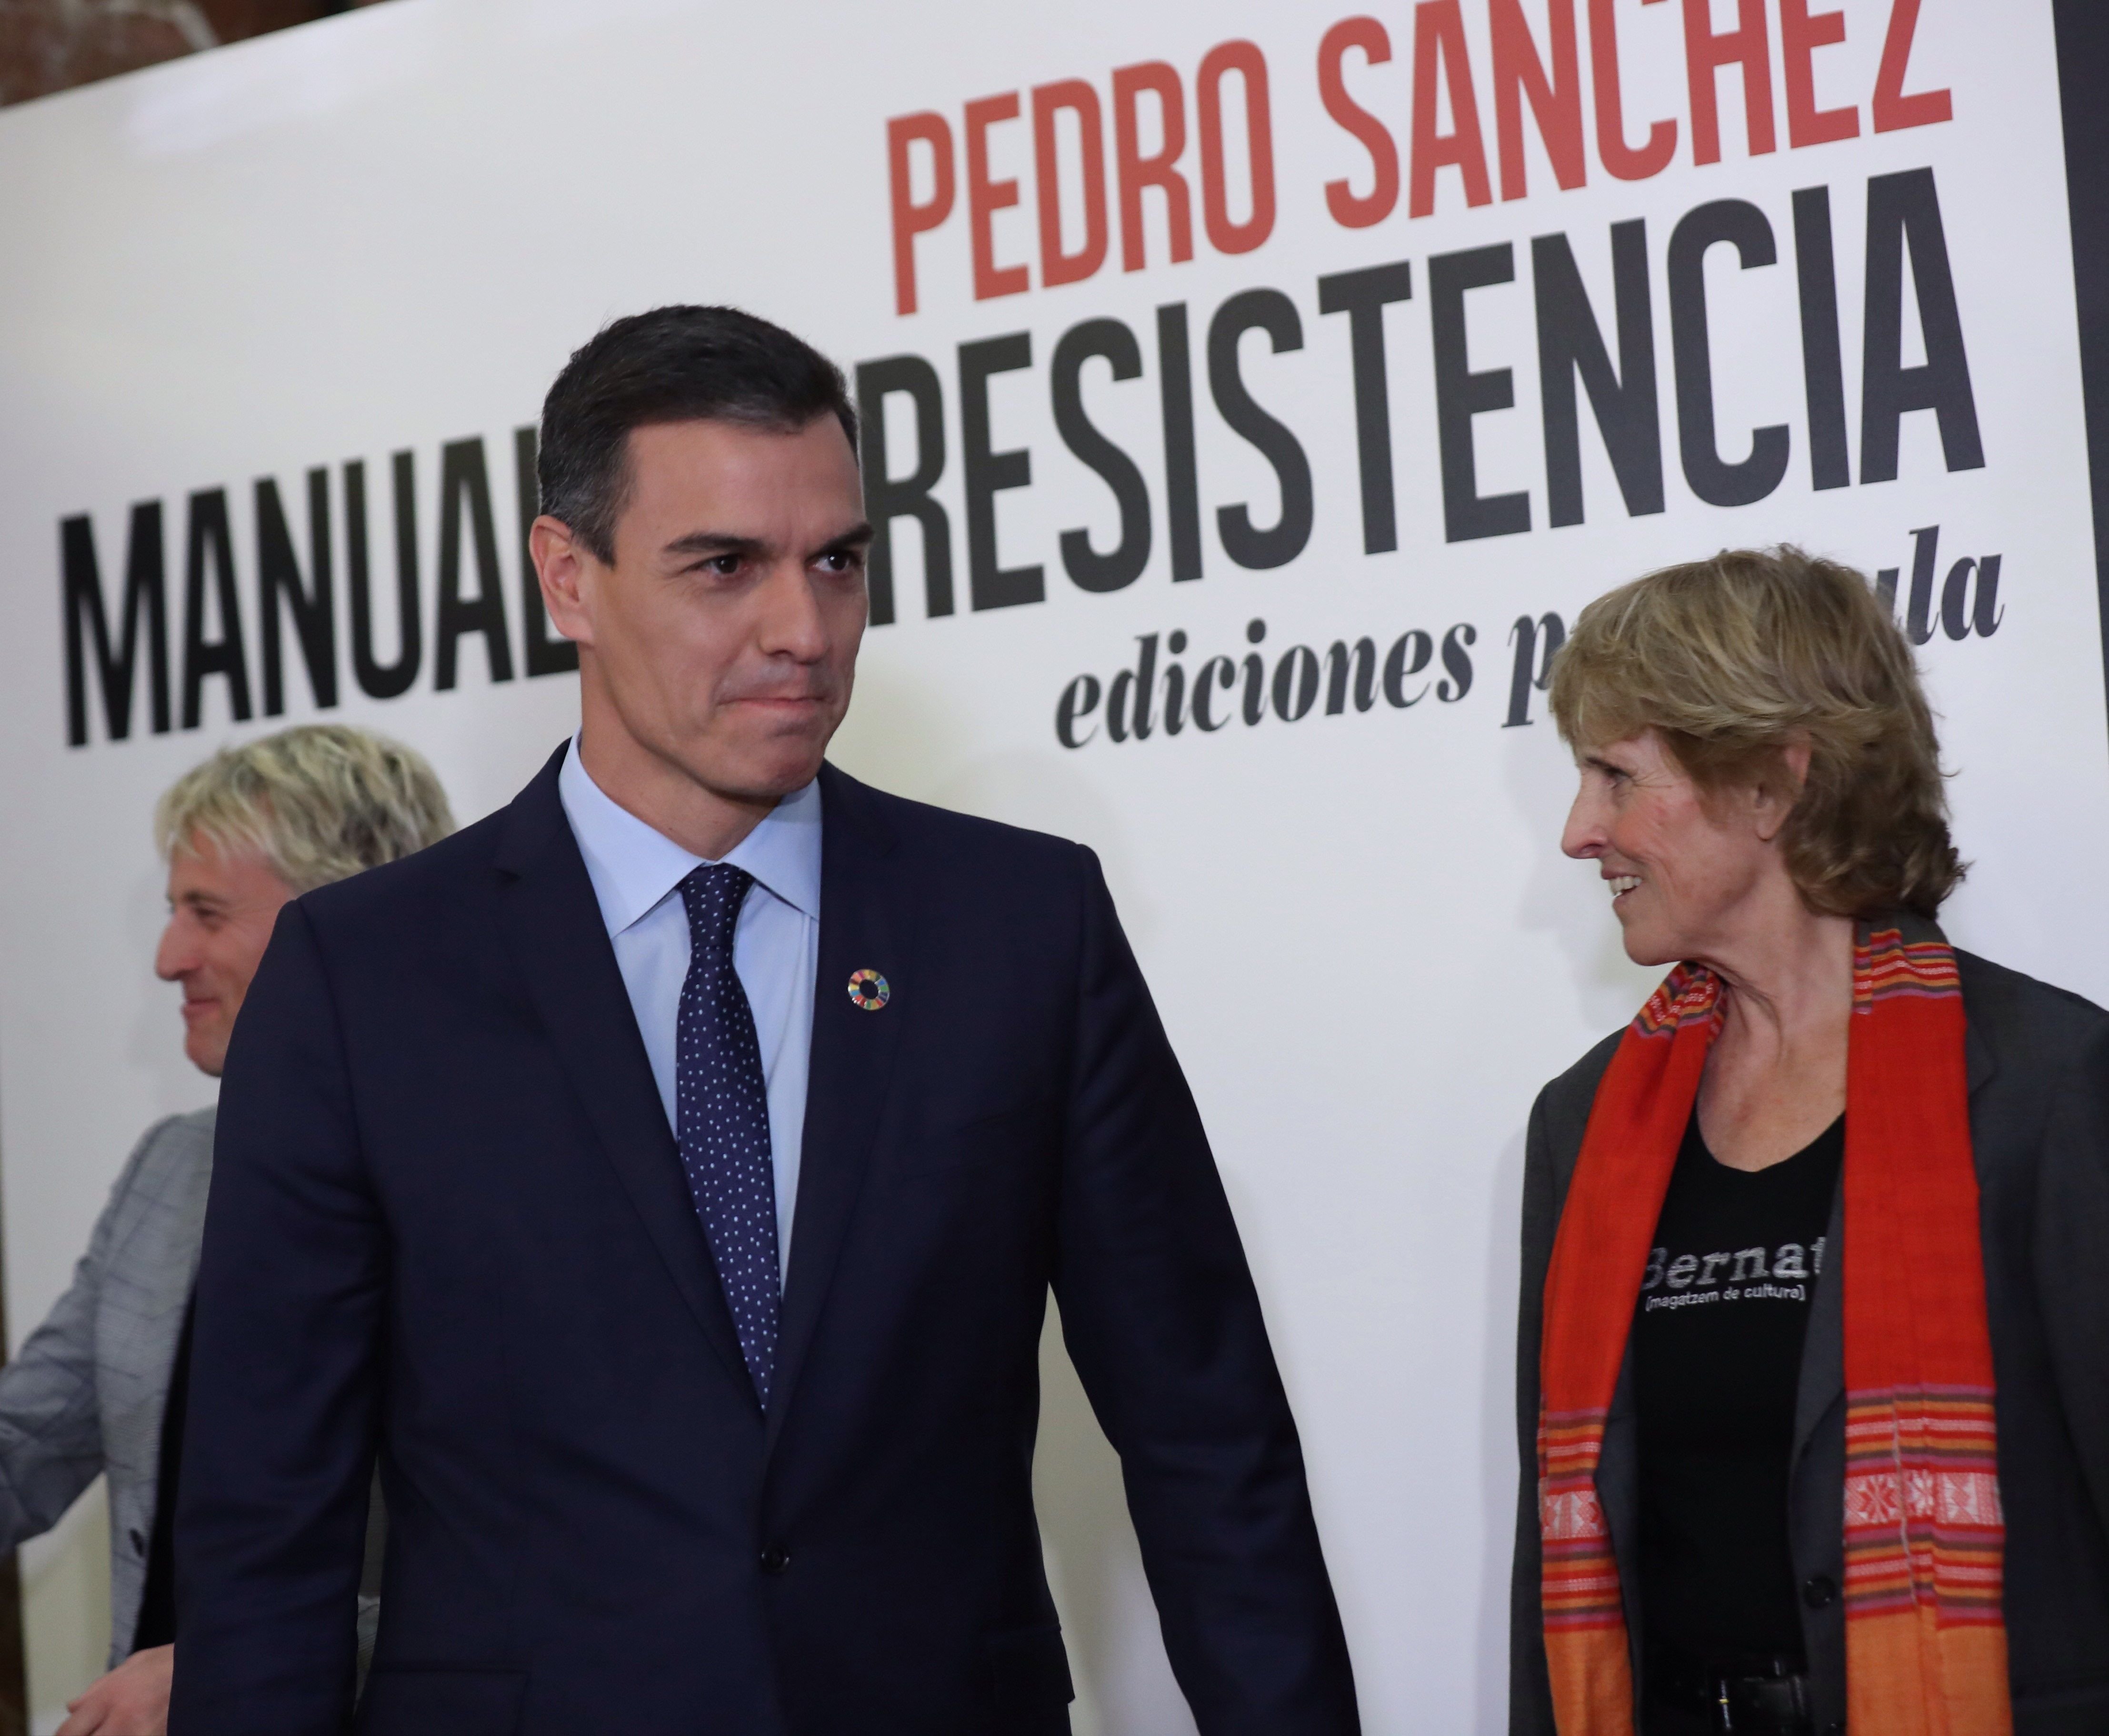 Milá opina de Rivera y Malú con Sánchez y la derecha la lapida: "¡Decrépita!"